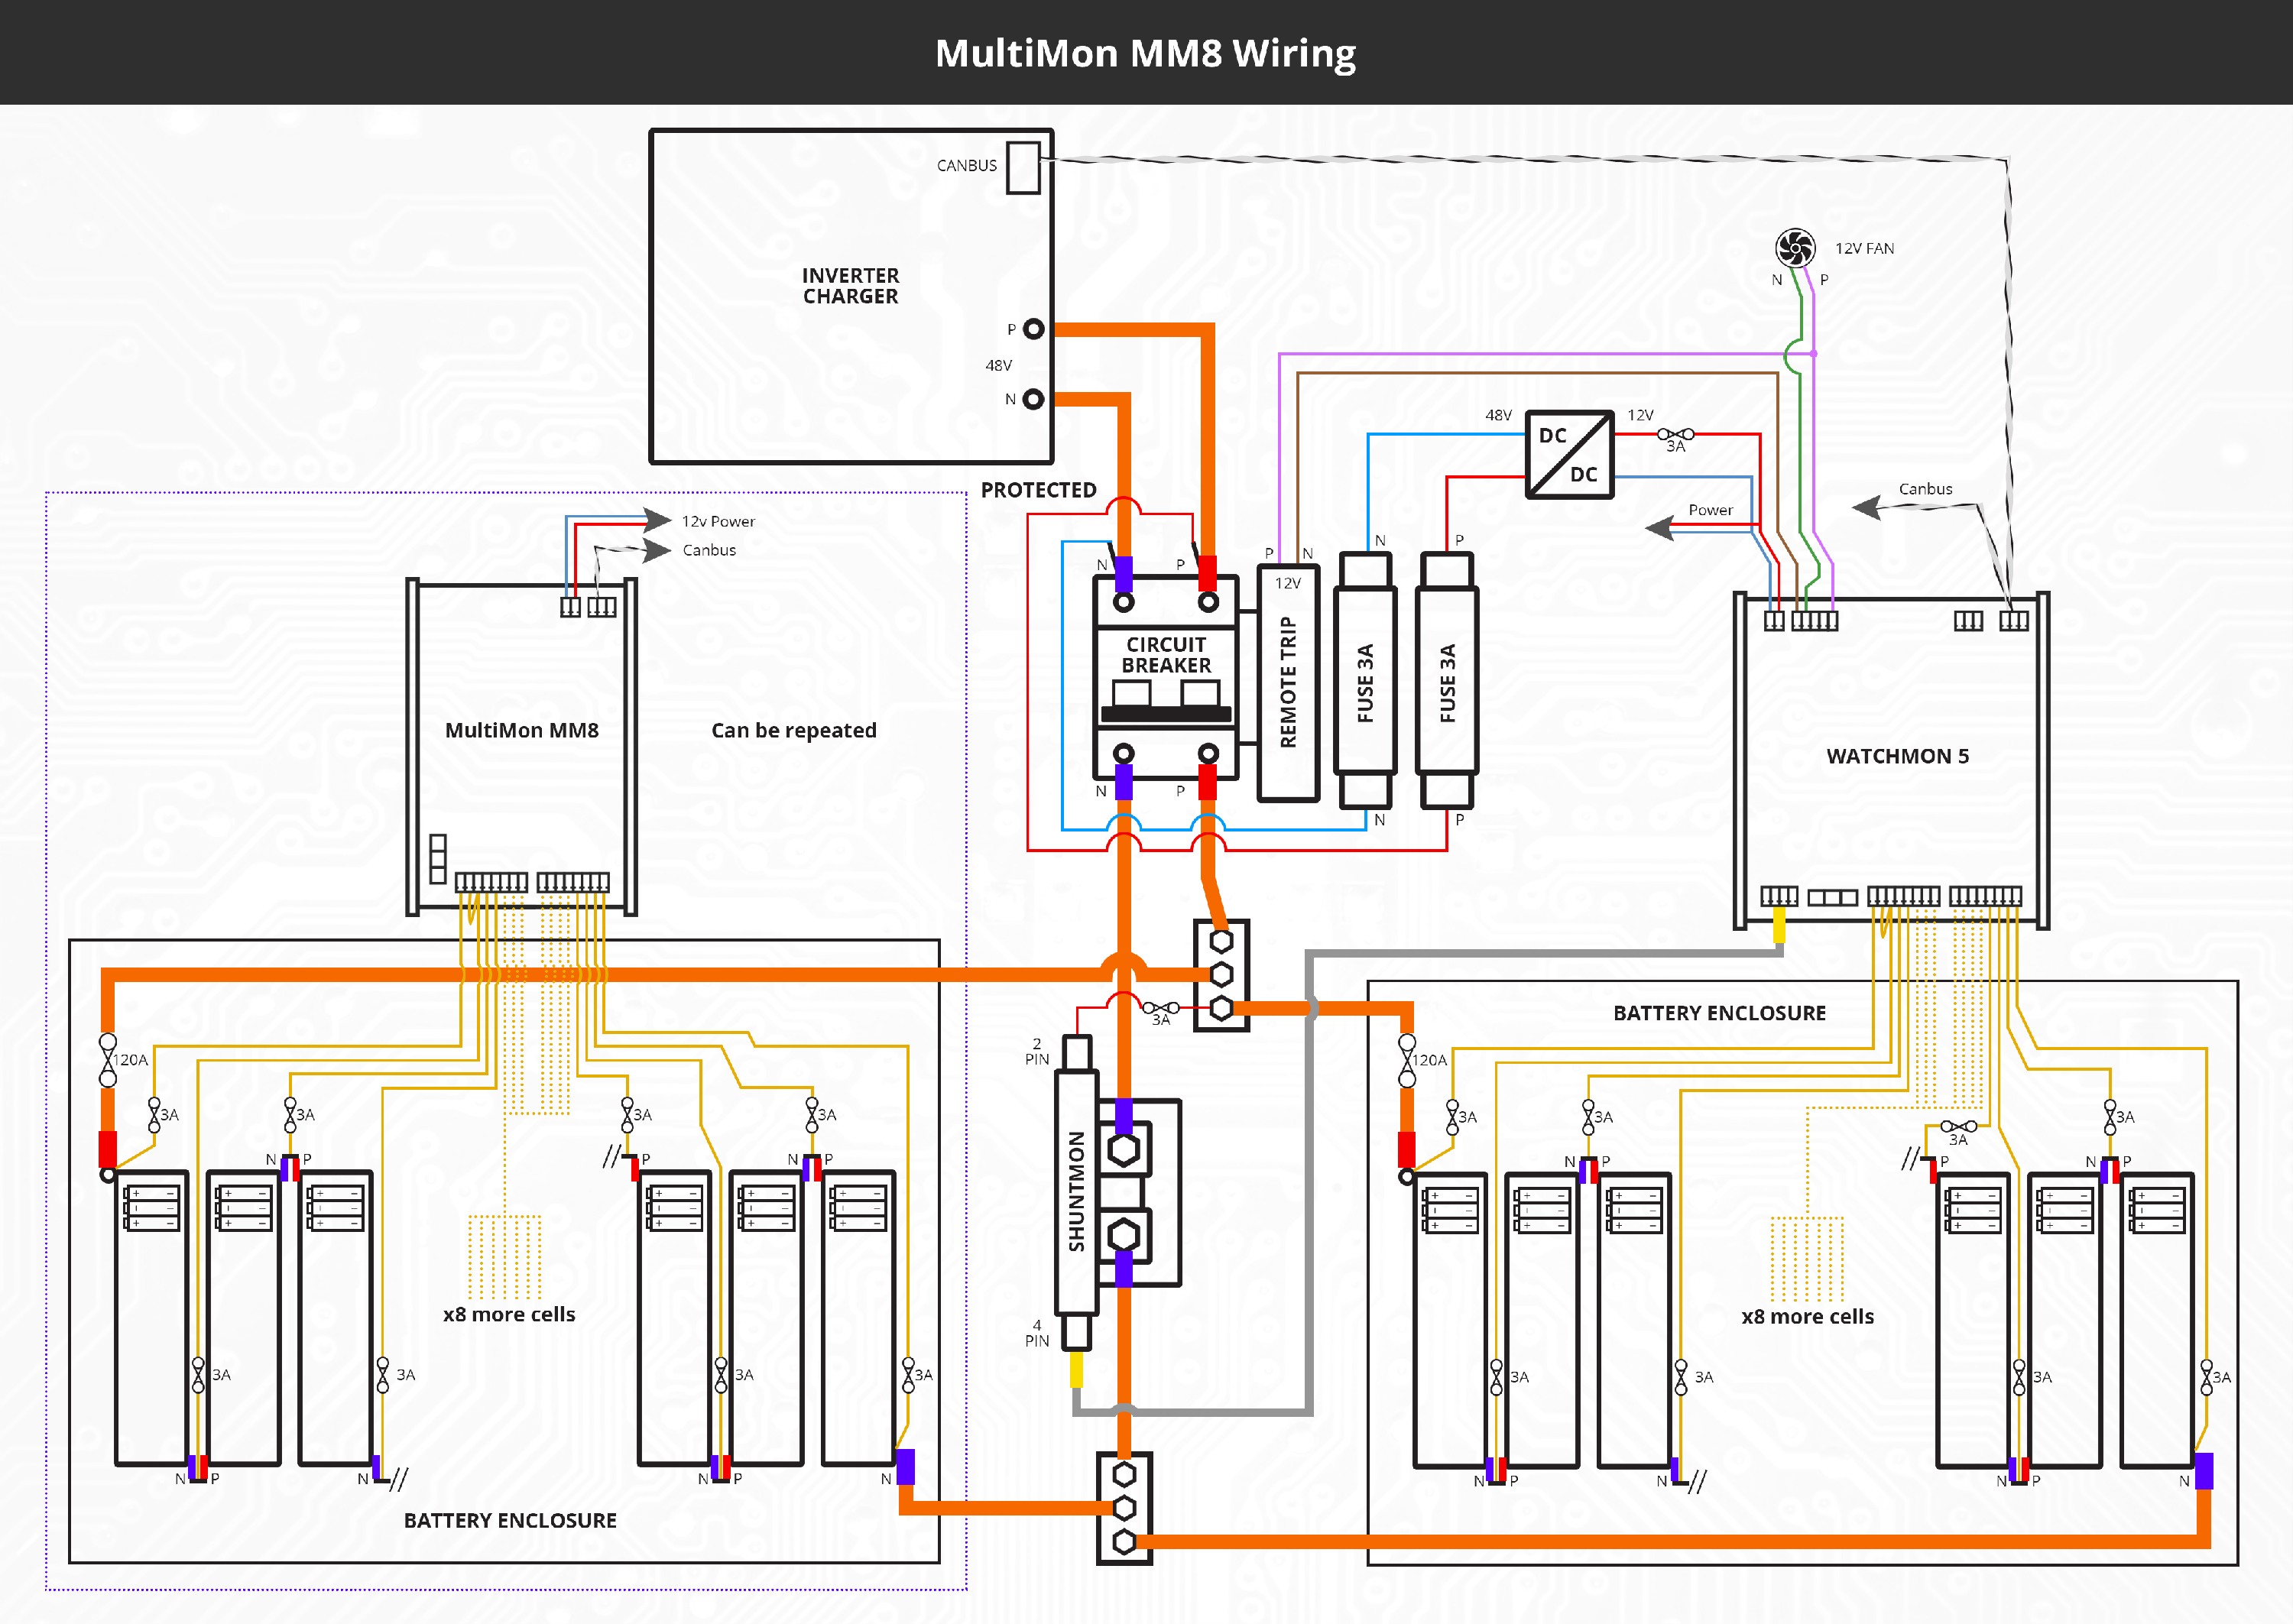 multimon-wiring.png